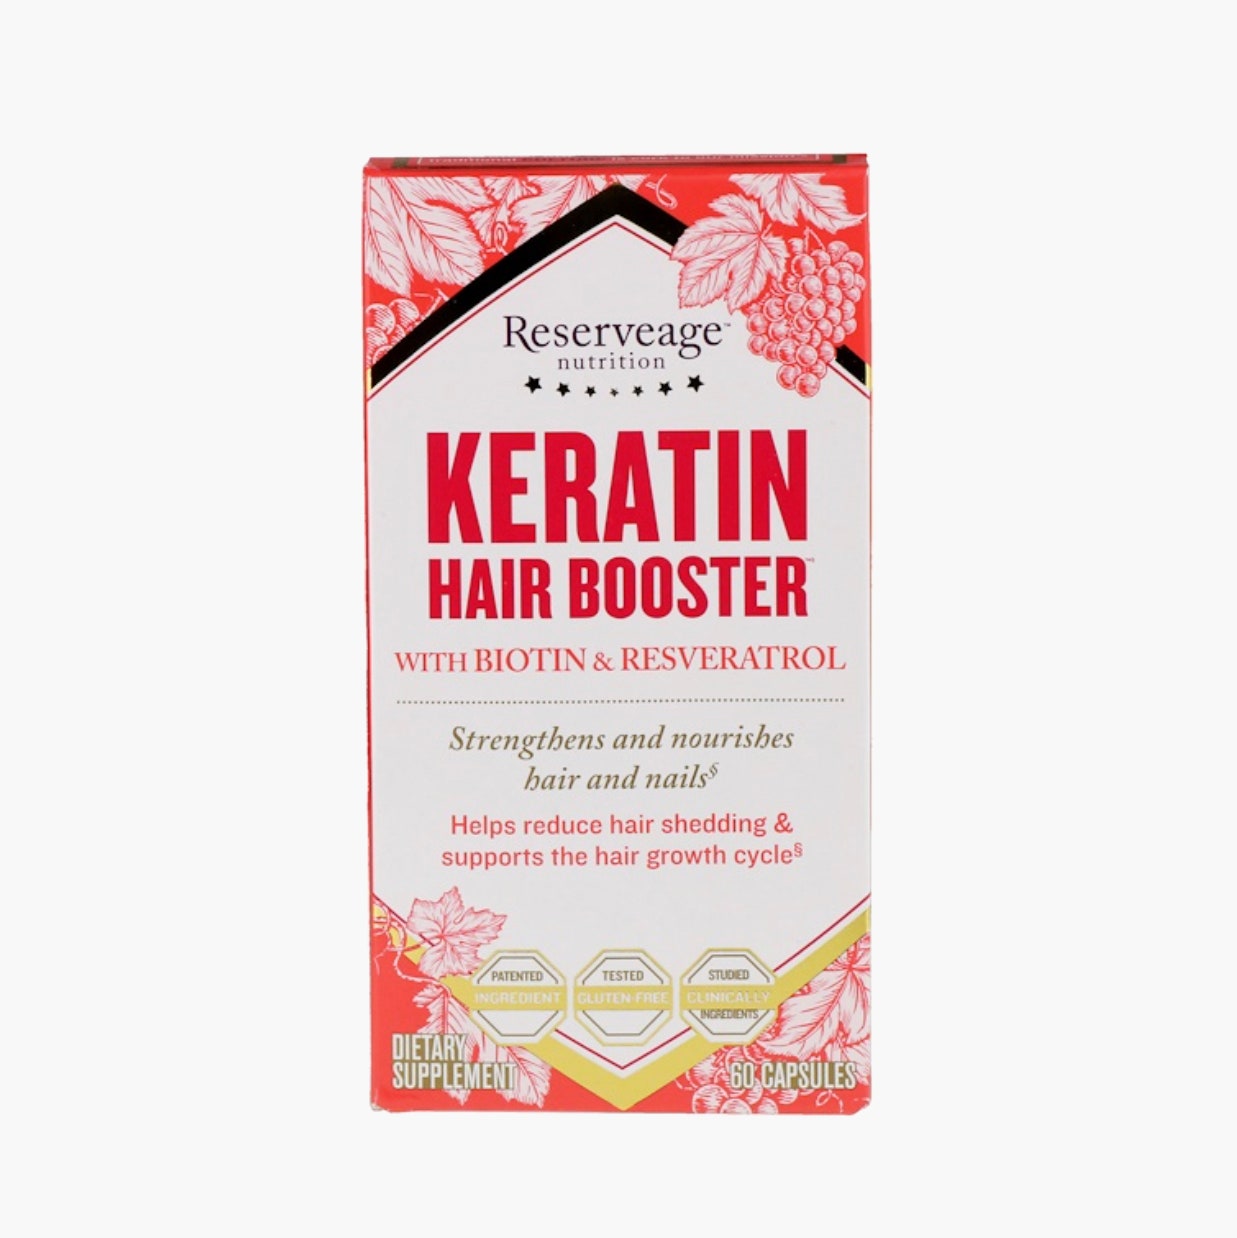 Кератиновый стимулятор для волос с биотином и ресвератролом Reservege Nutrition 3154 рубля